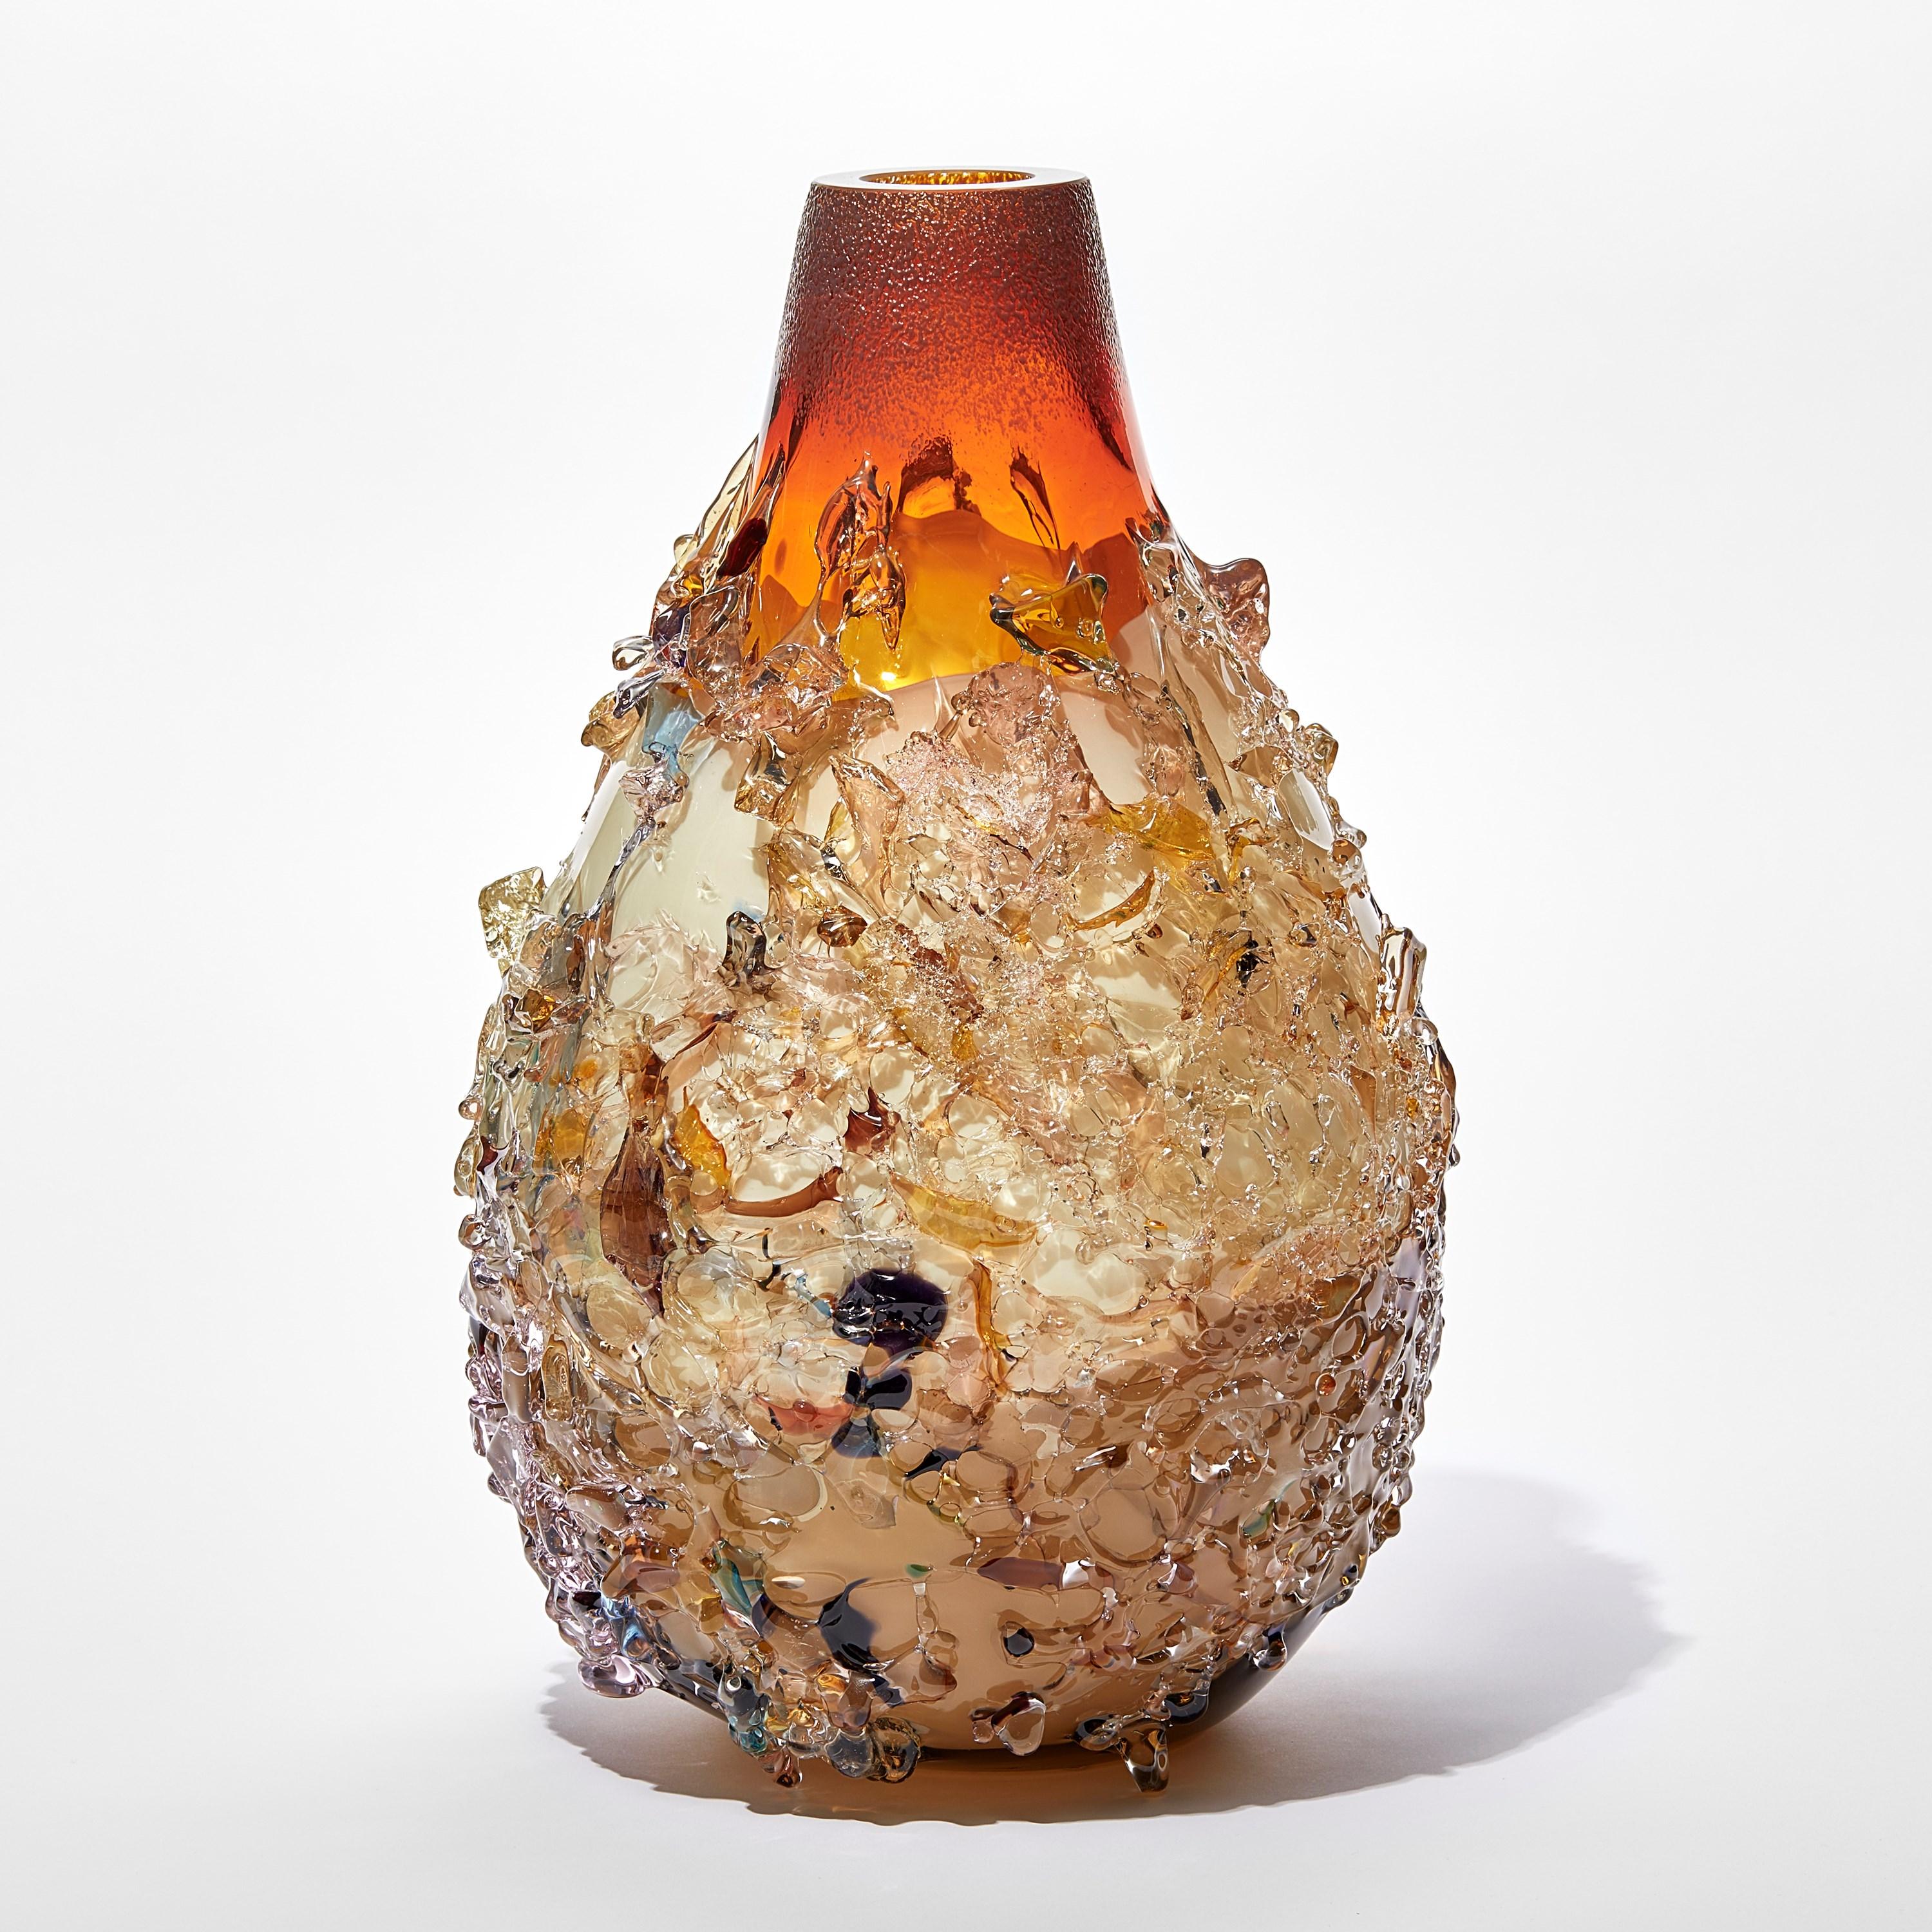 Sakura TFO23036 ist eine einzigartige Vase aus mundgeblasenem, skulpturalem Kunstglas in den Farben Orange, Creme, Jade und Bunt, die mit organischen Glasscherben des niederländischen Künstlers Maarten Vorlijk verziert ist. Das Stück ist